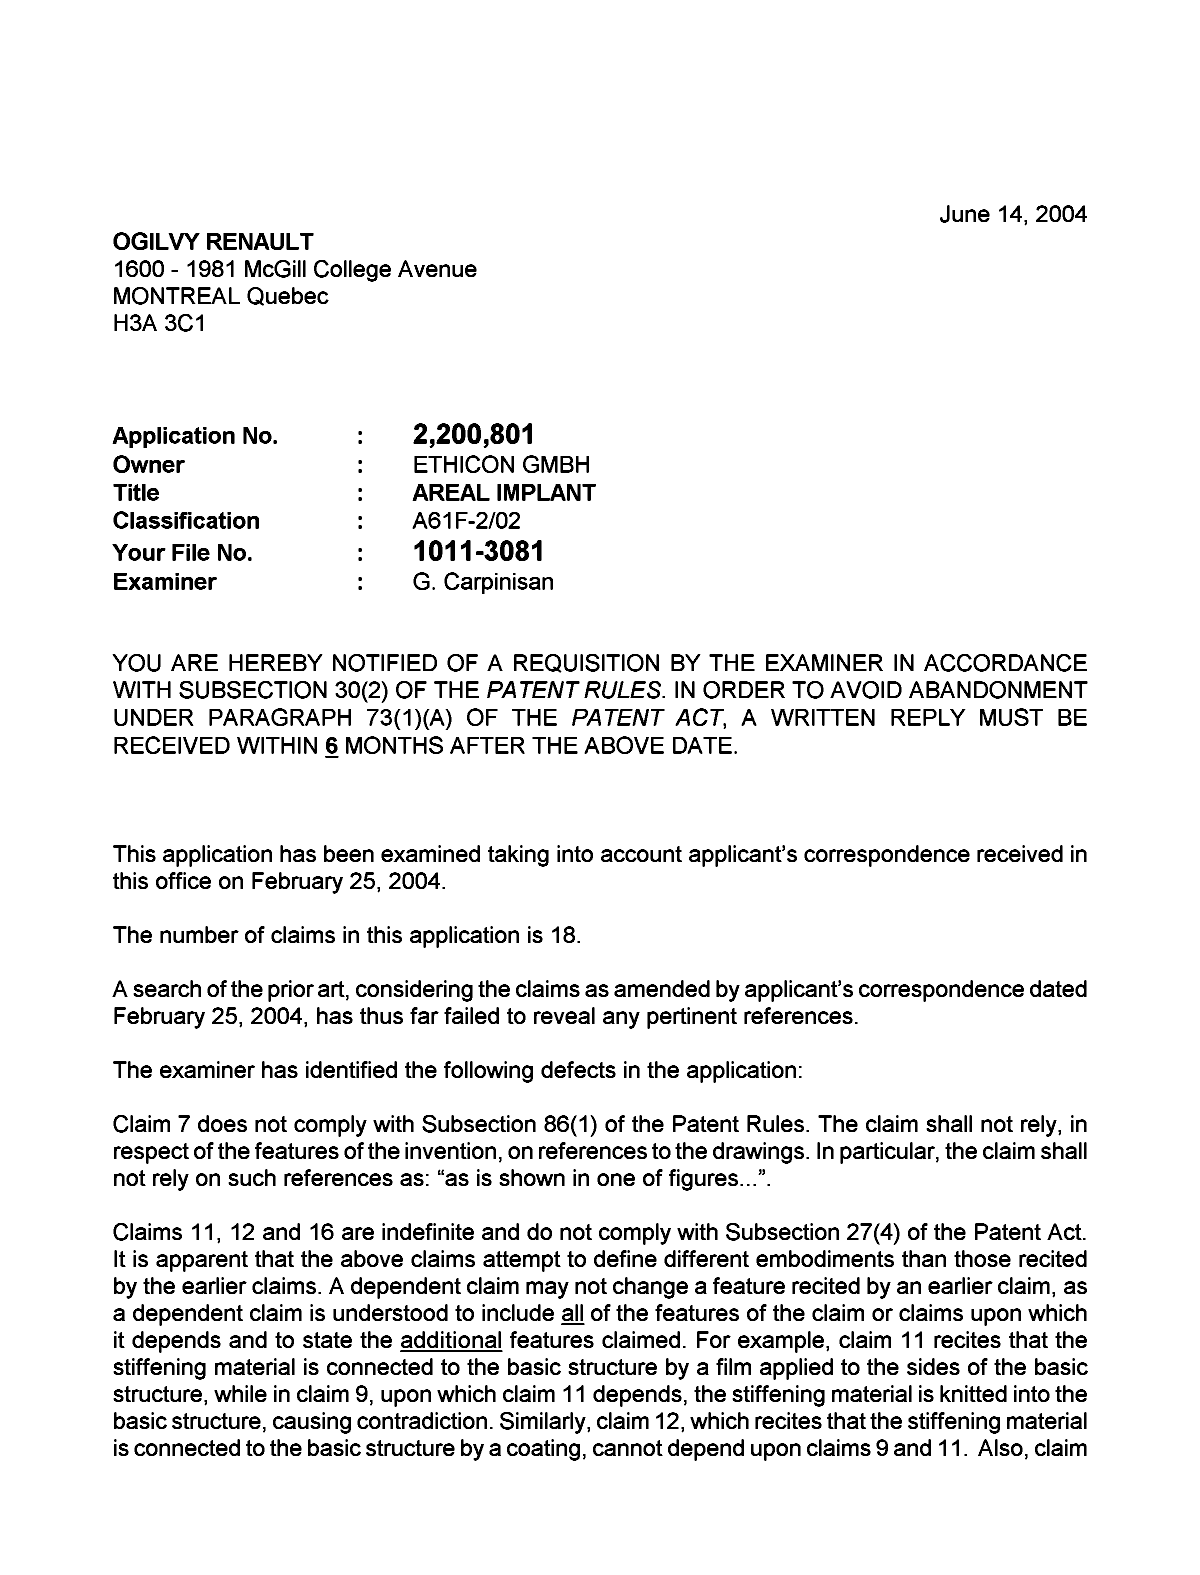 Document de brevet canadien 2200801. Poursuite-Amendment 20031214. Image 1 de 2